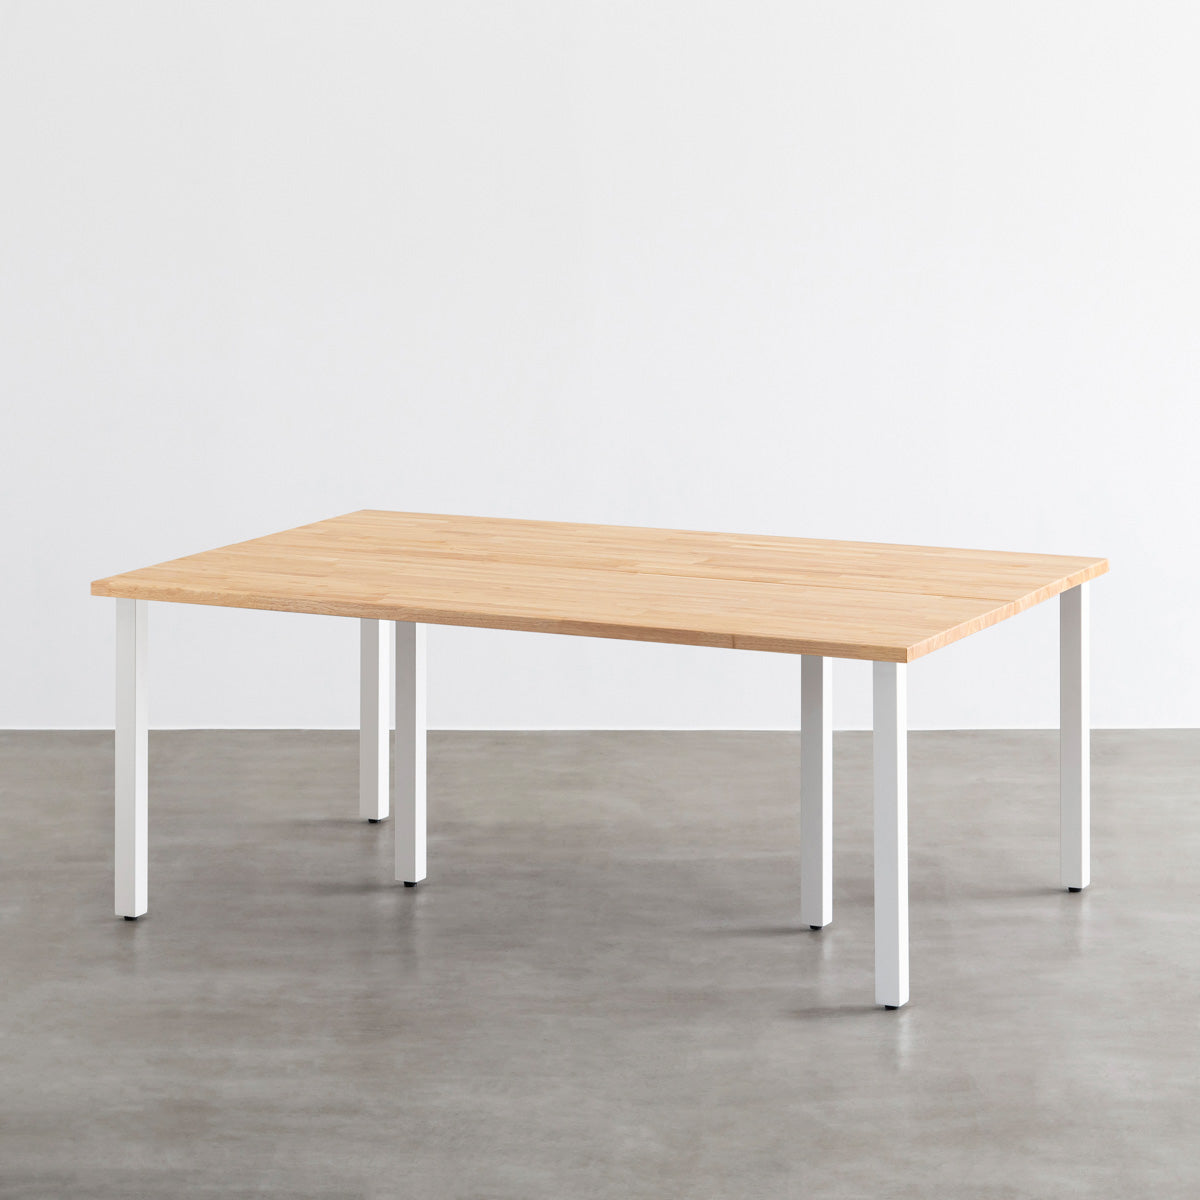 THE TABLE / ラバーウッド ナチュラル × White Steel × W150 - 200cm 